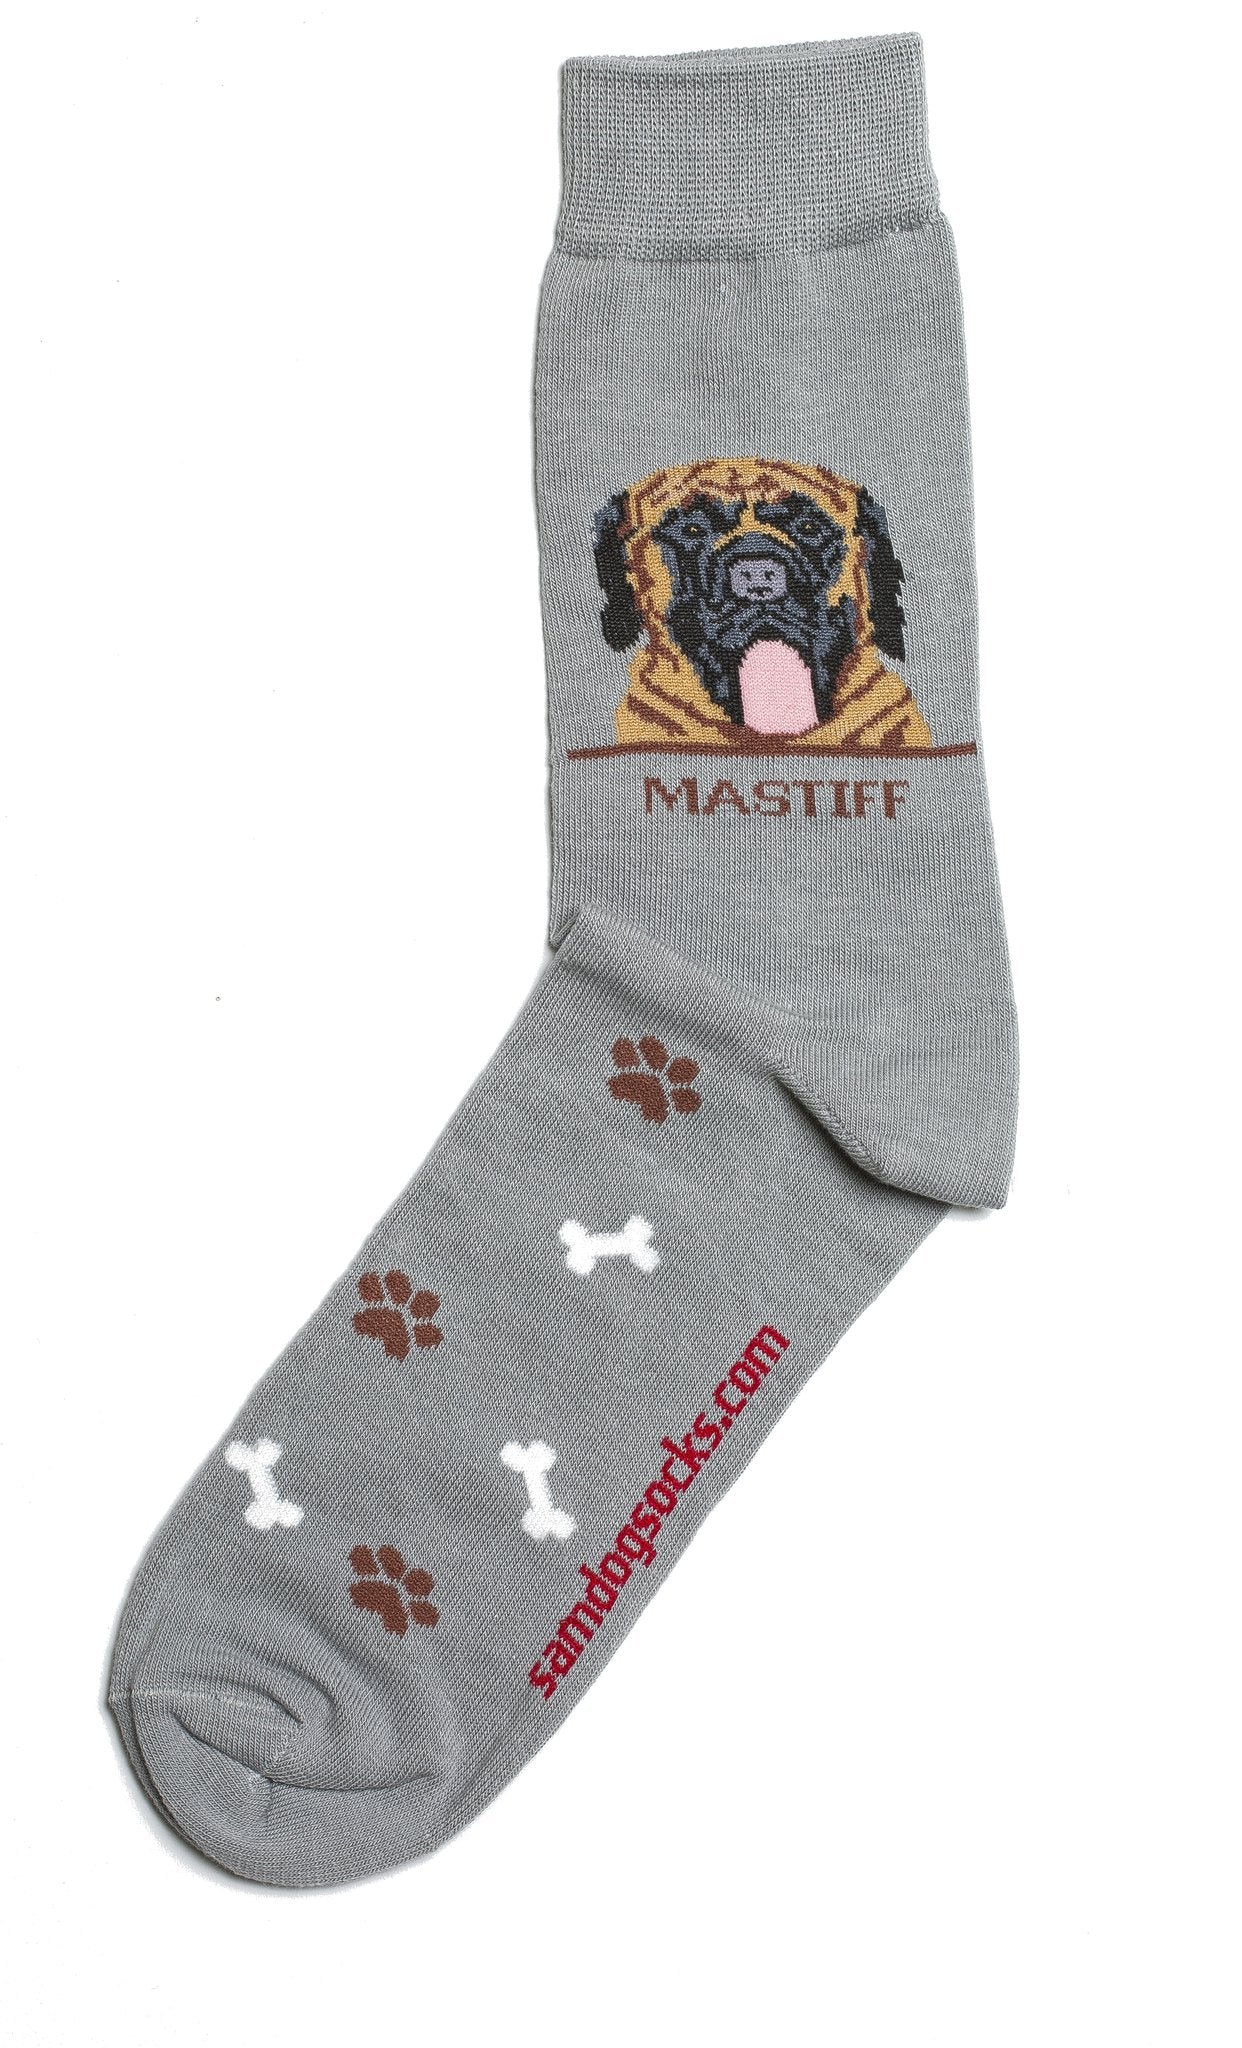 Mastiff socks for men - gray